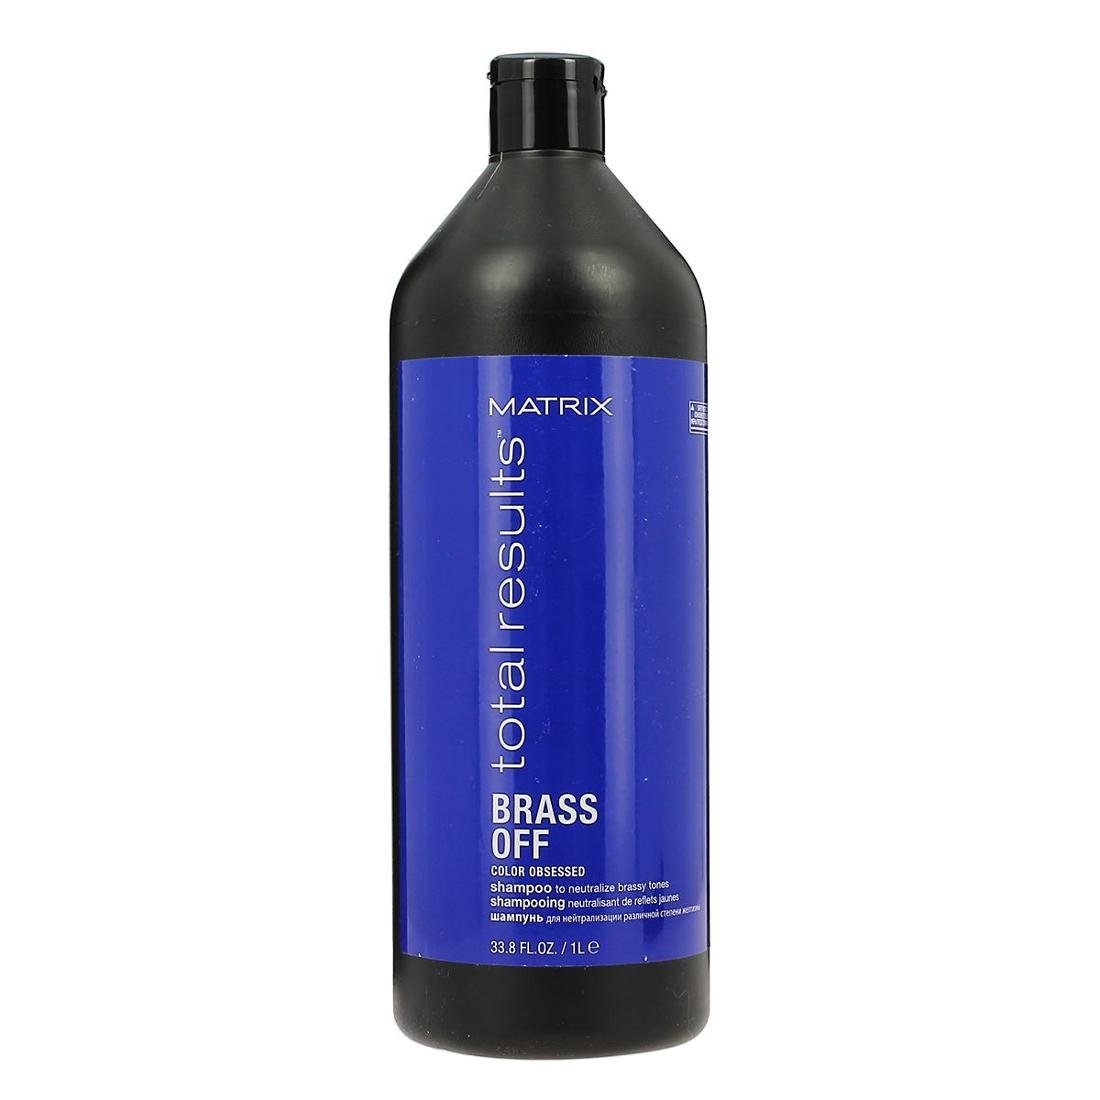 matrix total results szampon do włosów neutralizujący odcień 1000 ml